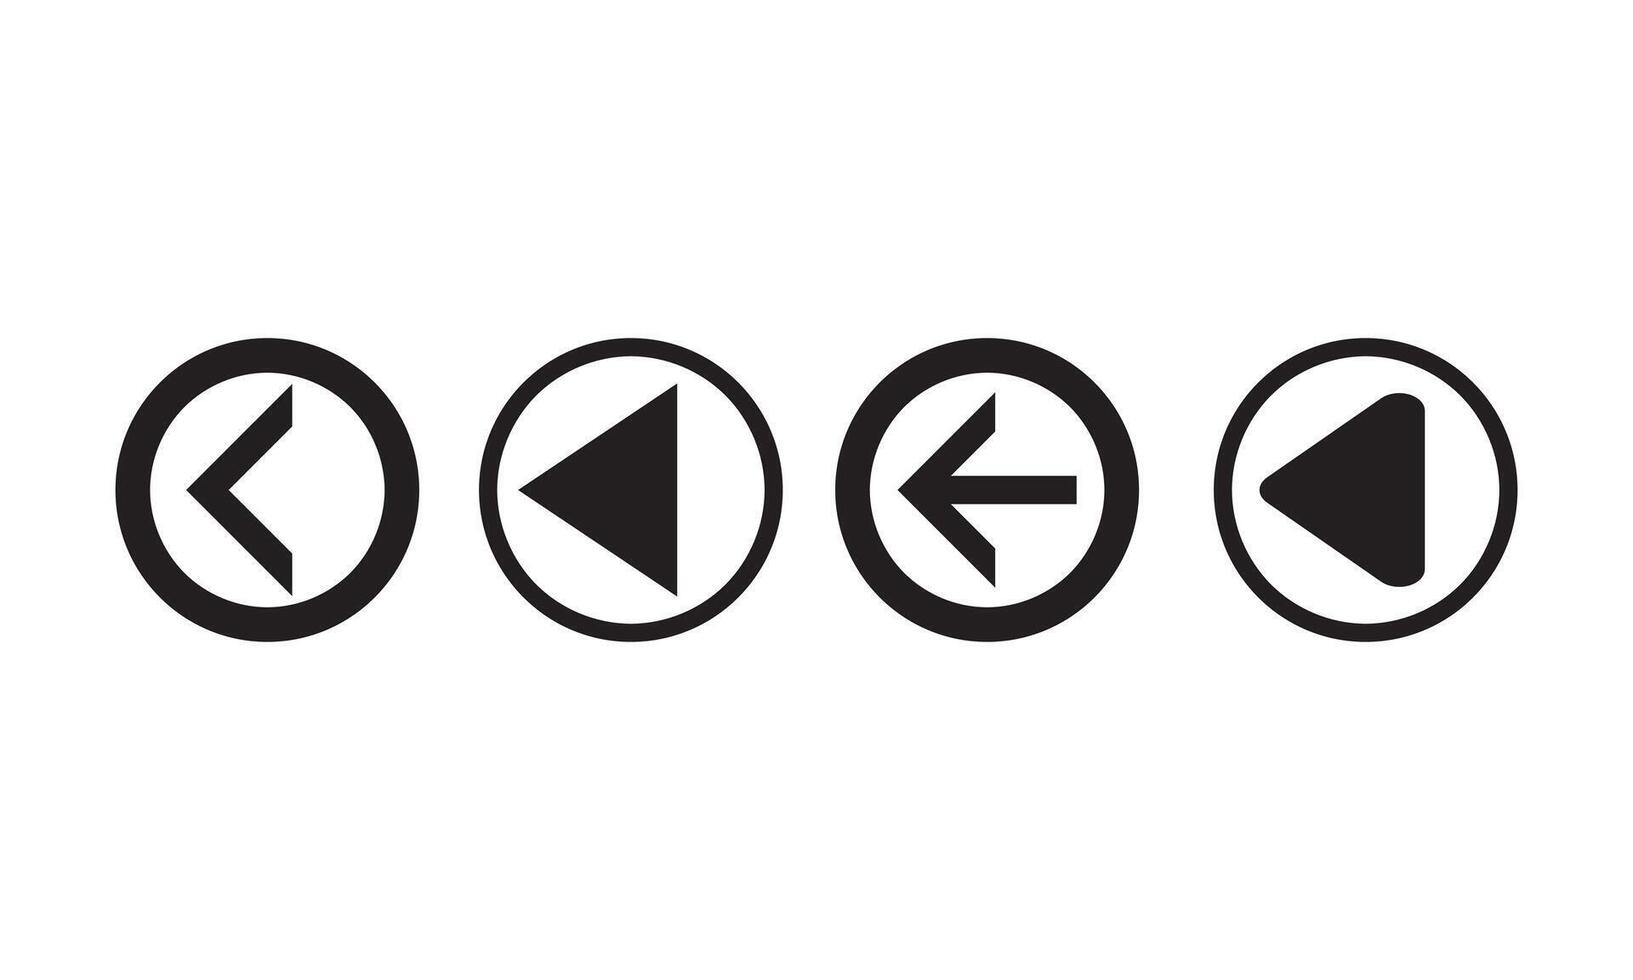 Set of black vector arrow.arrow vector illustration and collection.arrows vector icon.